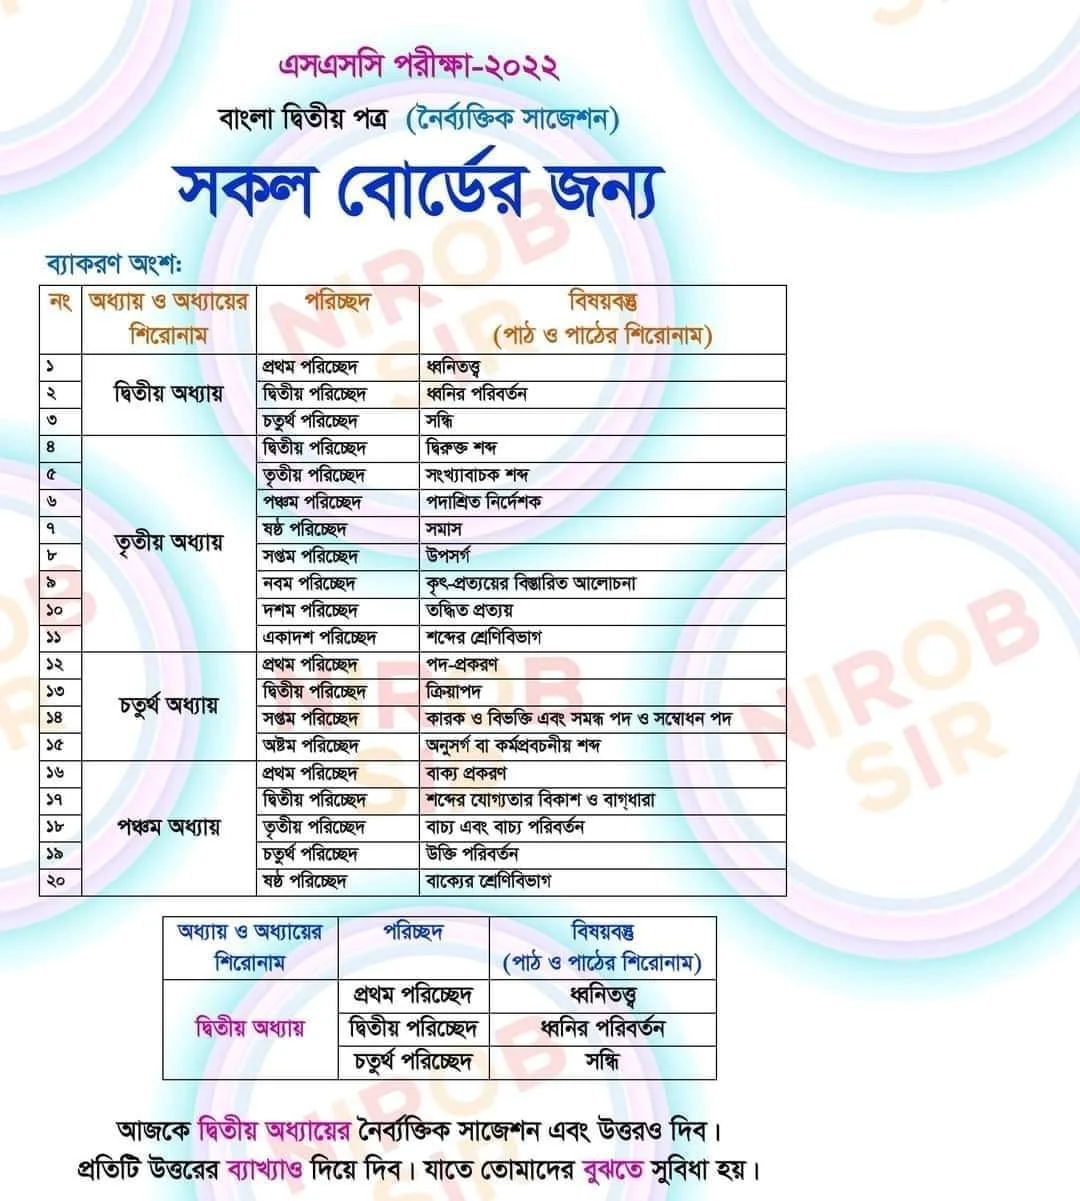 এসএসসি বাংলা ২য় পত্র নৈর্ব্যক্তিক (MCQ) সাজেশন ২০২২ (সকল বোর্ডের জন্য) | SSC Bangla 2nd Paper MCQ Final Suggestion 2022